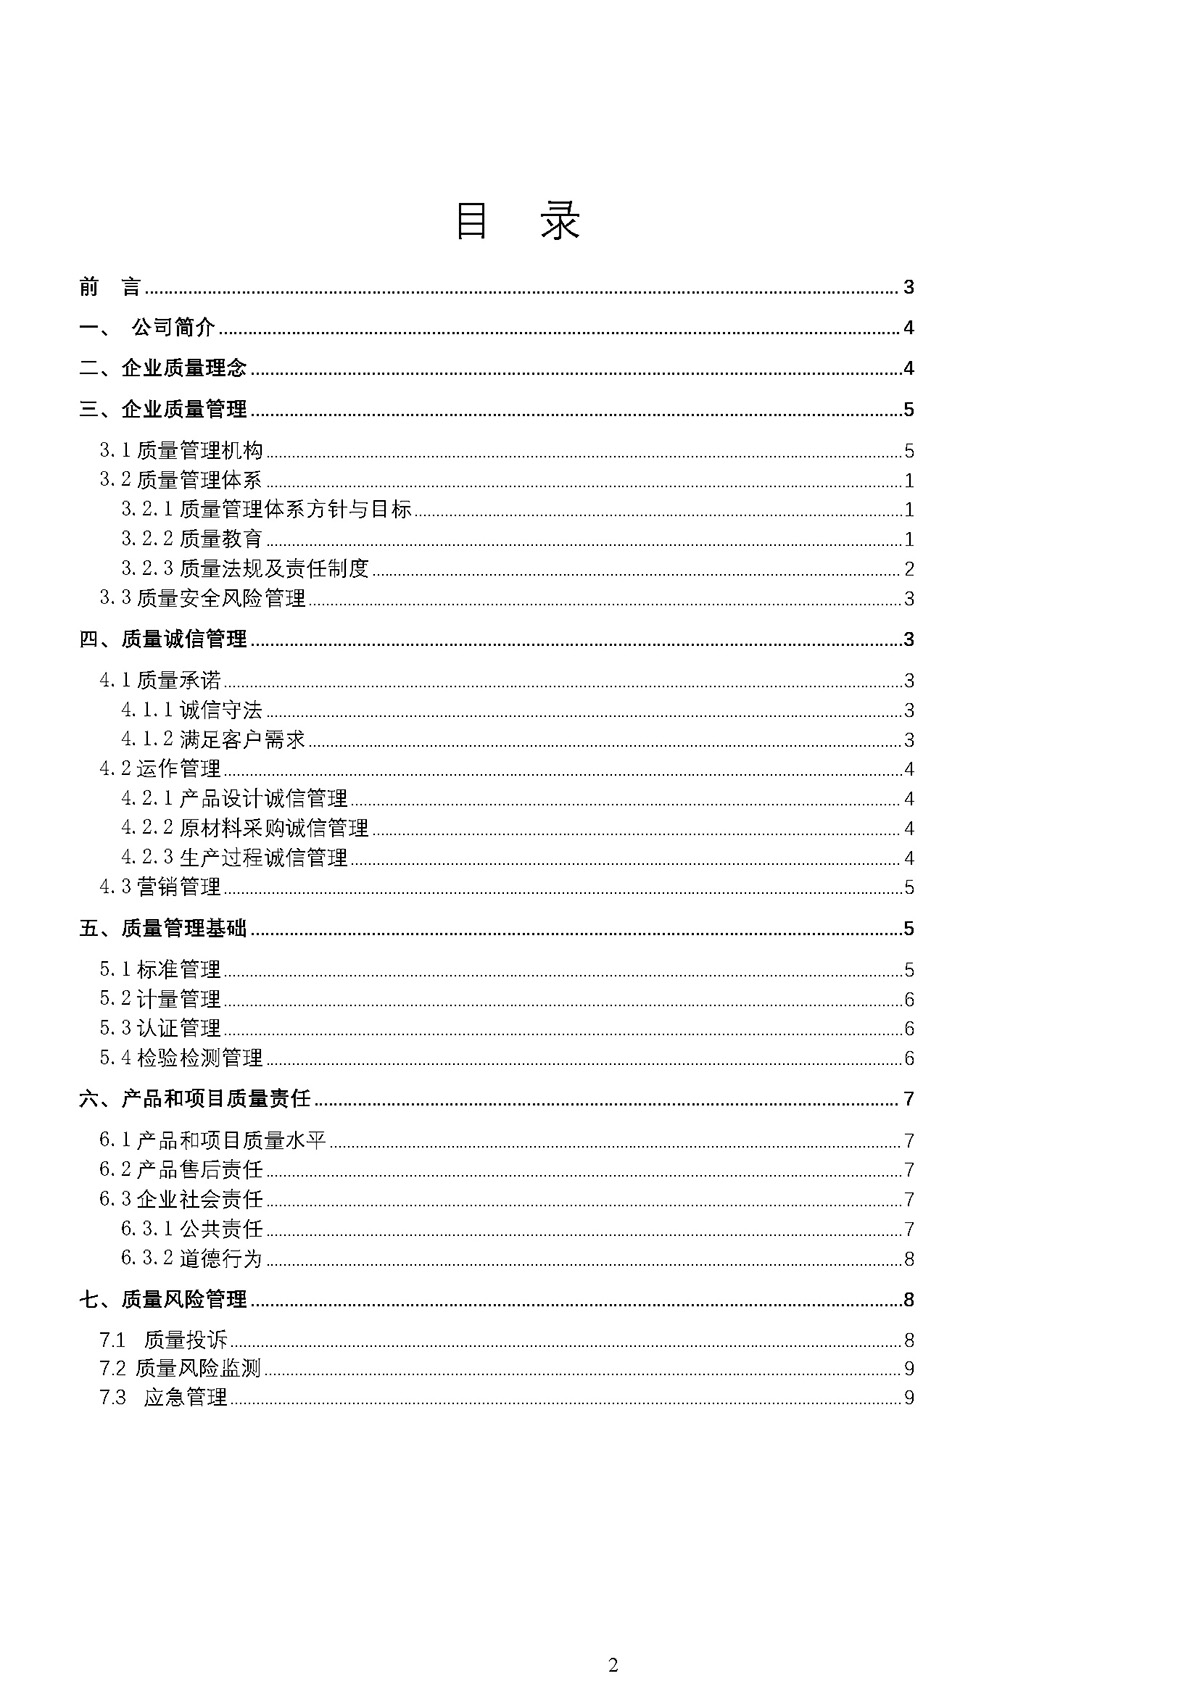 尊龙凯时泵业质量诚信报告(图2)